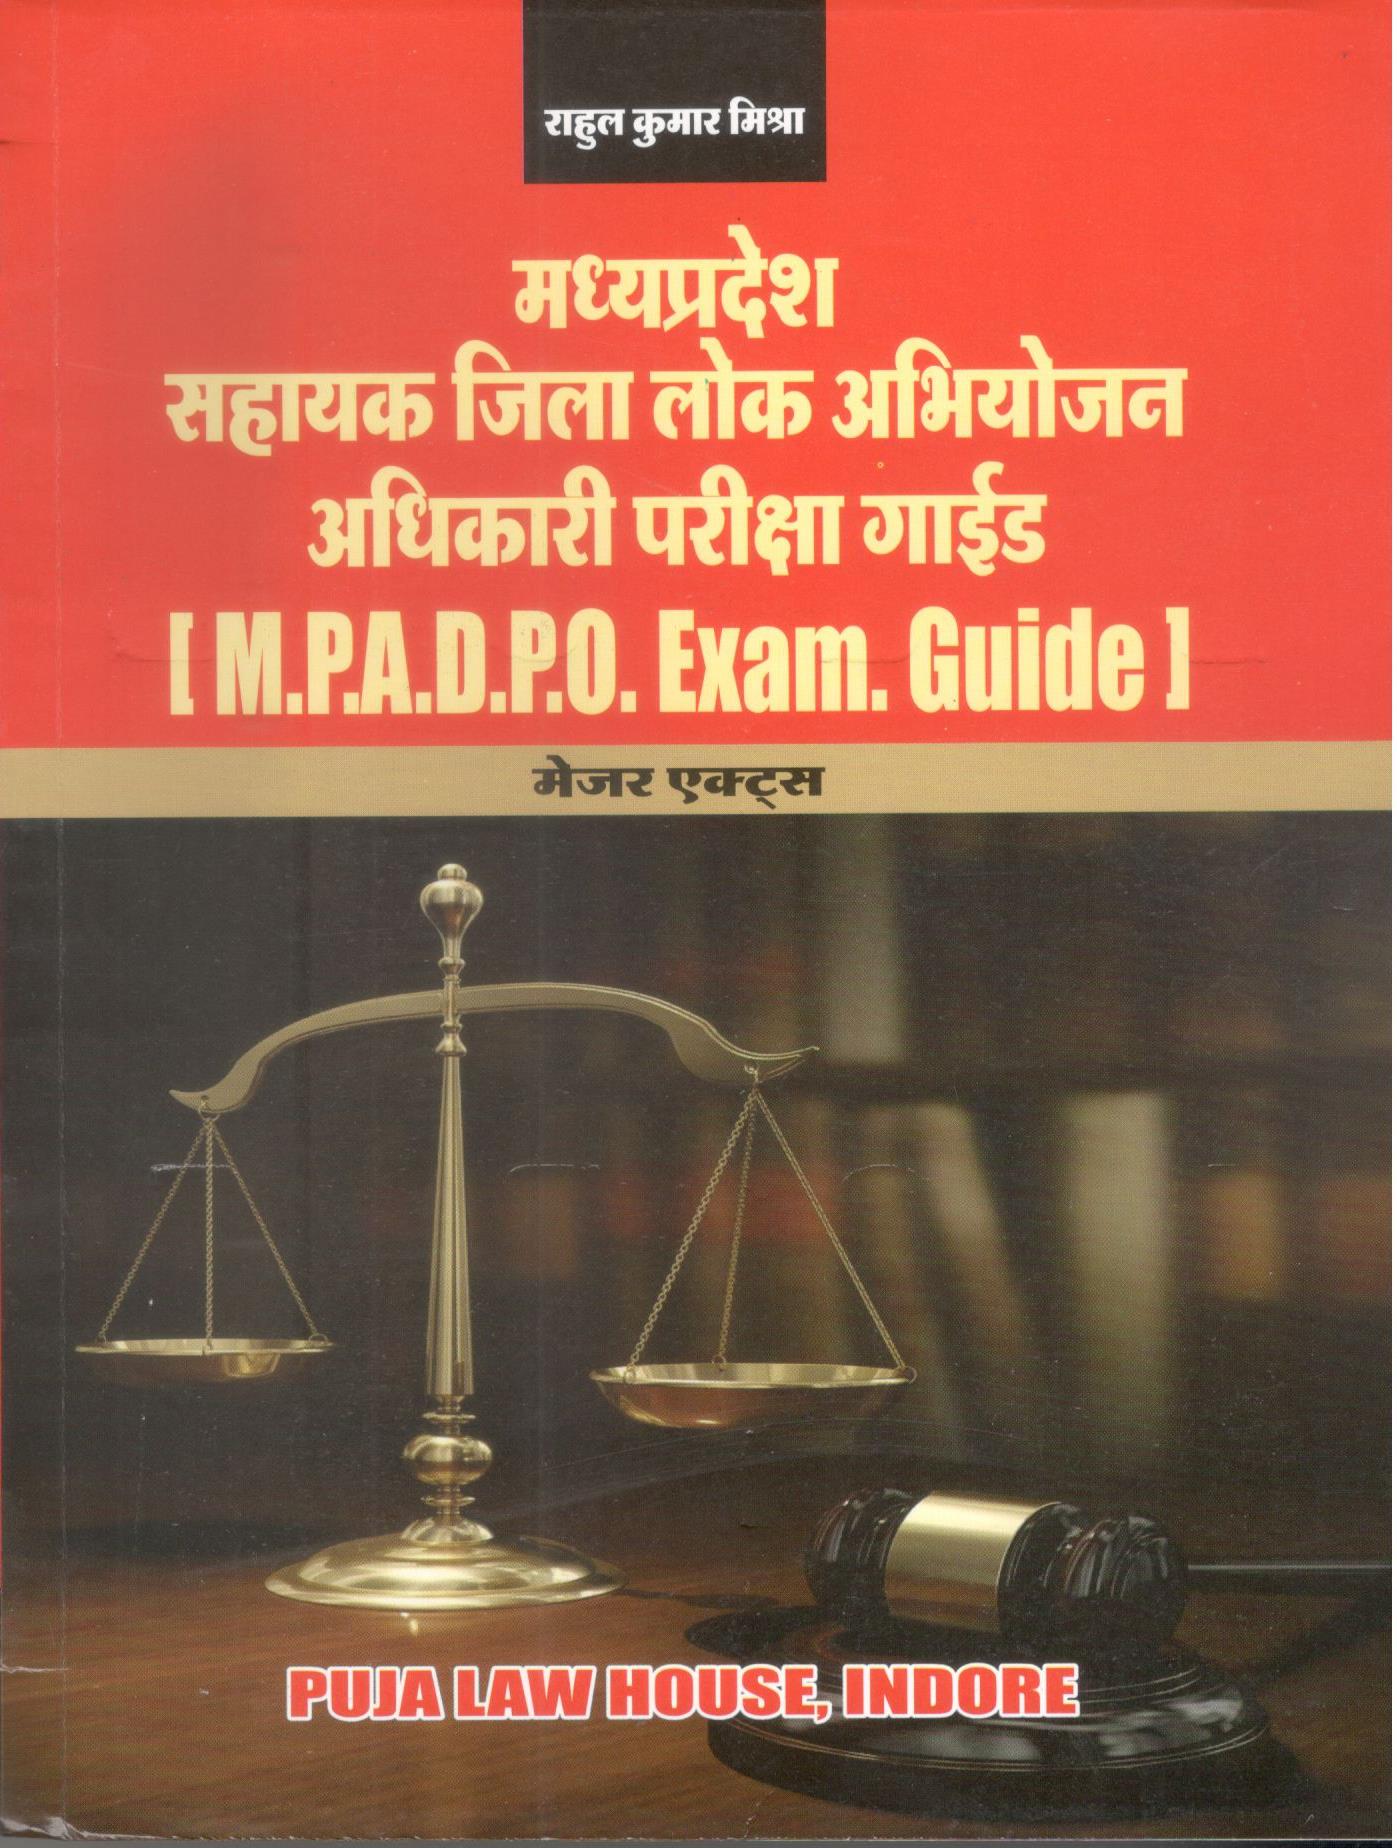  Buy  राहुल मिश्रा - म. प्र. सहायक जिला लोक अभियोजन अधिकारी परीक्षा गाईड  (मेजर एक्ट्स) / M.P.A.D.P.O. EXAM. GUIDE (Major Acts)